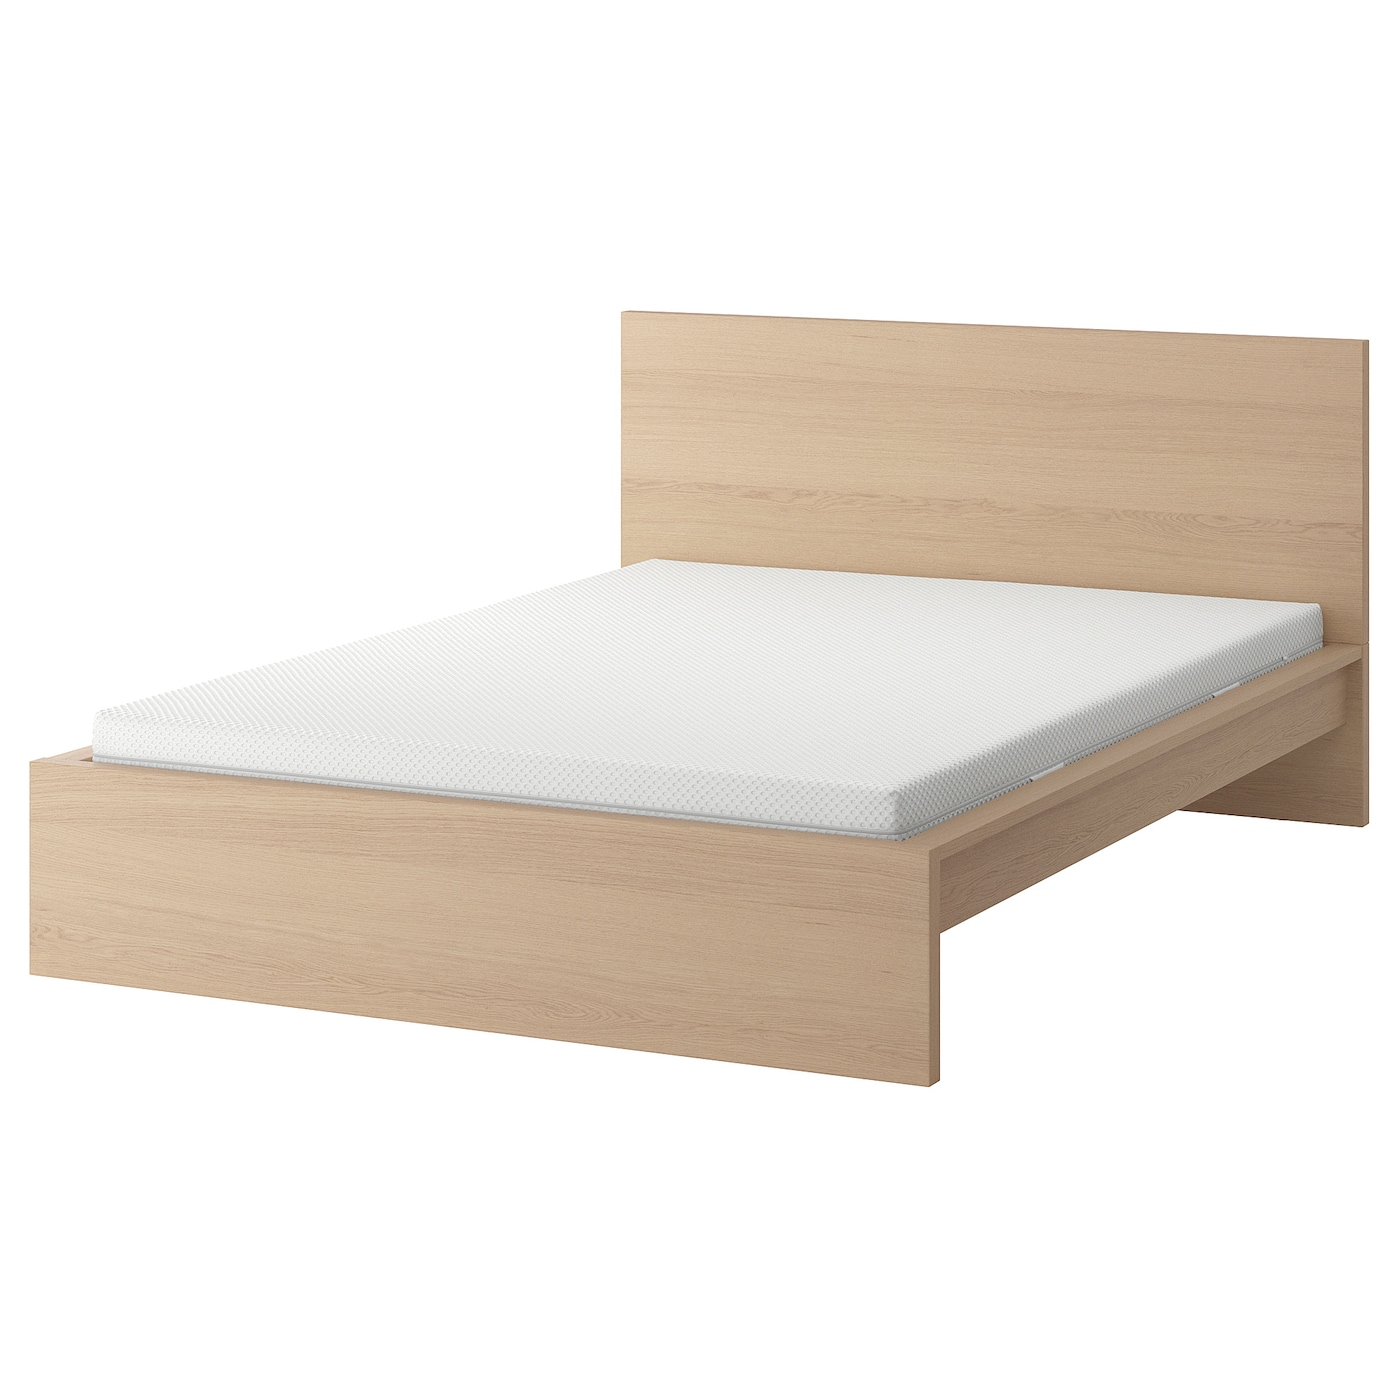 Кровать - IKEA MALM, 200х140 см, матрас средне-жесткий, под беленый дуб, МАЛЬМ ИКЕА